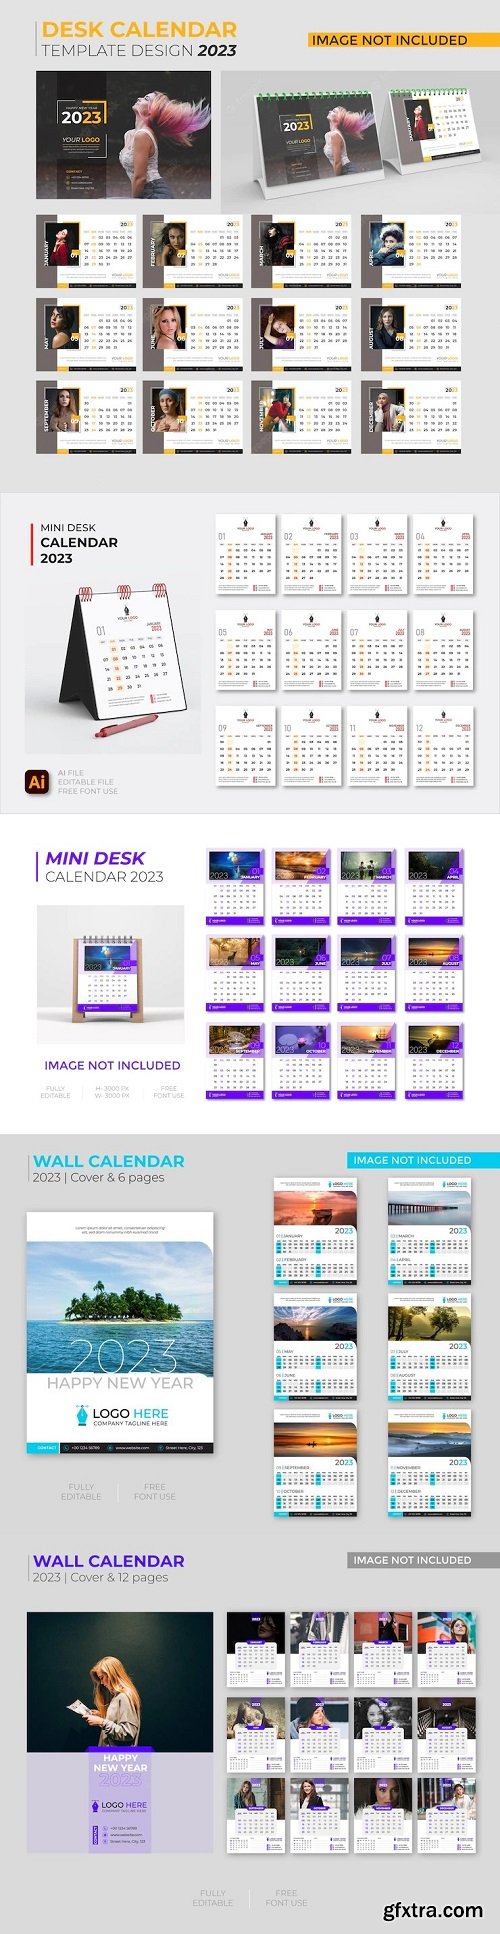 Mini desk calendar 2023 template